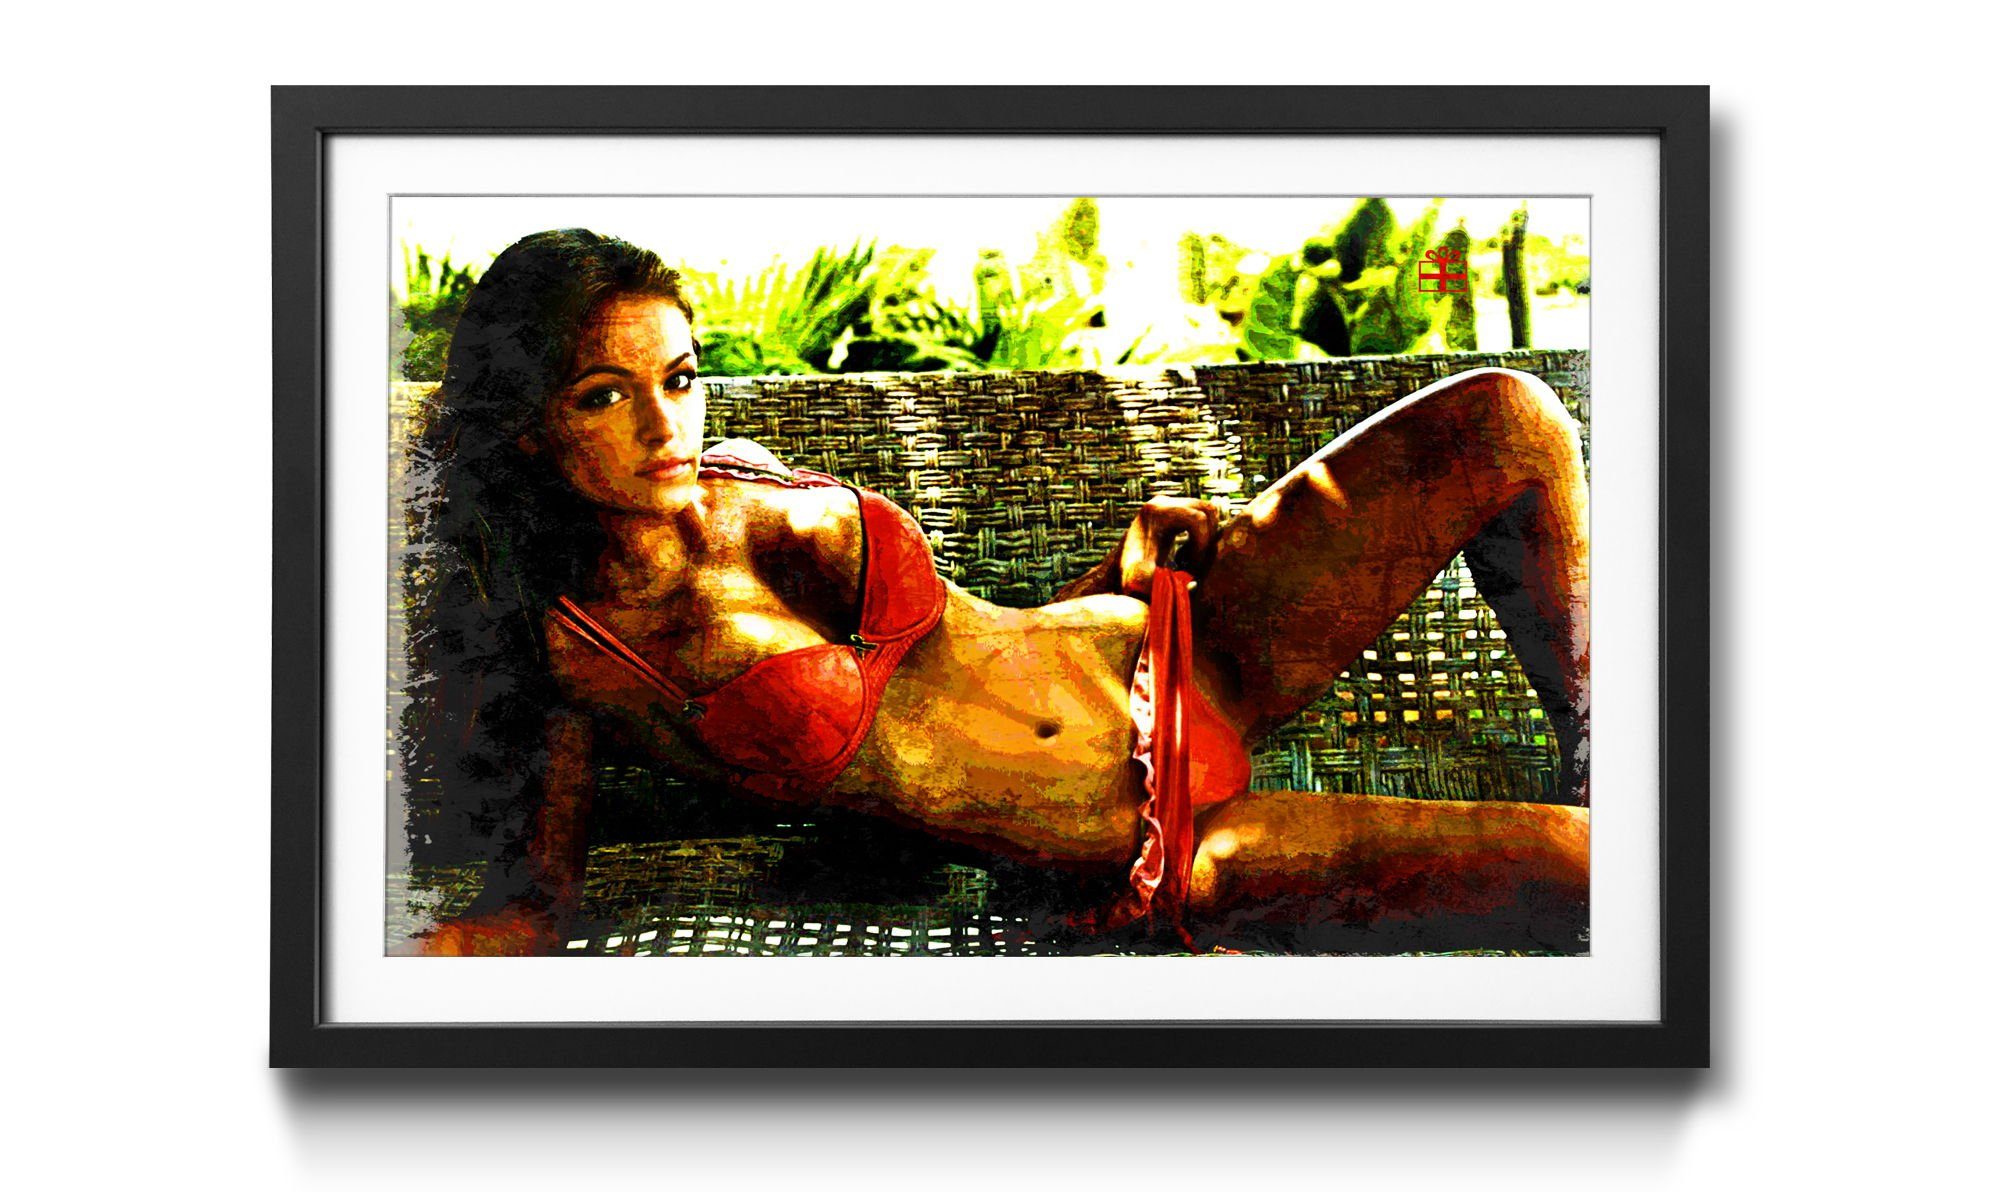 WandbilderXXL Bild mit Wandbild, Present, erhältlich Red in Erotik, Rahmen 4 Größen